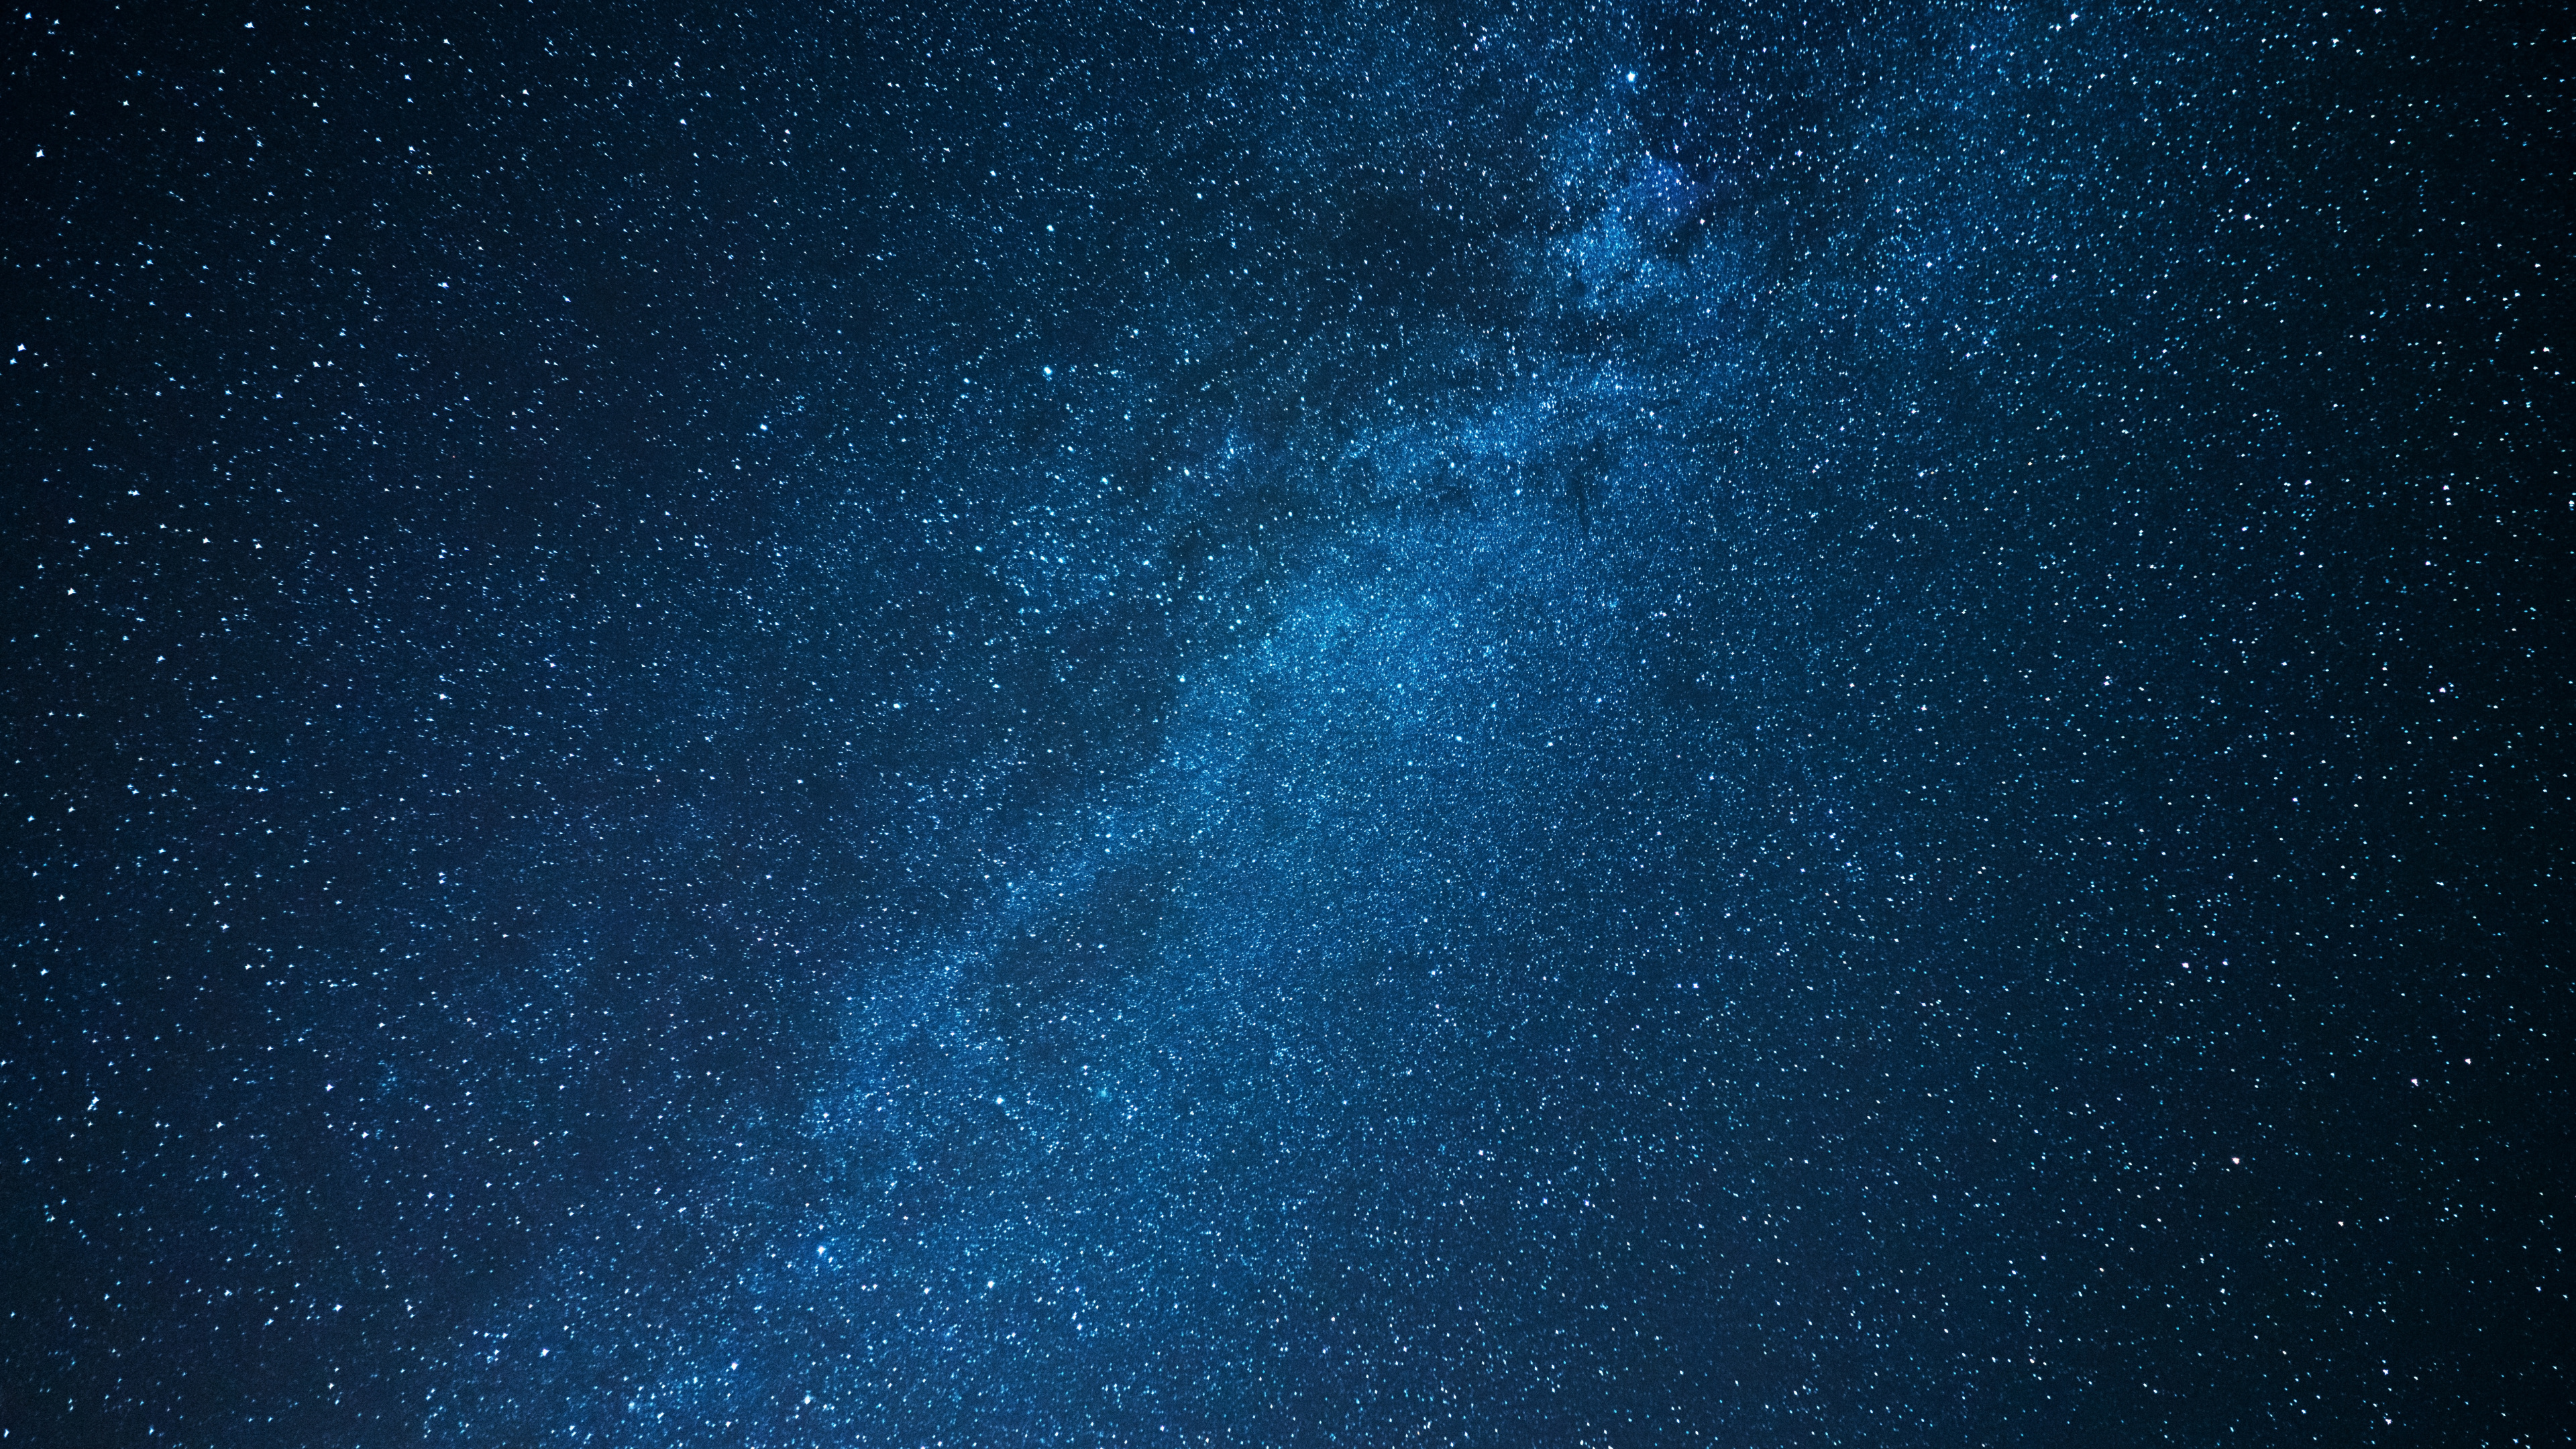 Cielo Estrellado Azul y Blanco. Wallpaper in 3840x2160 Resolution